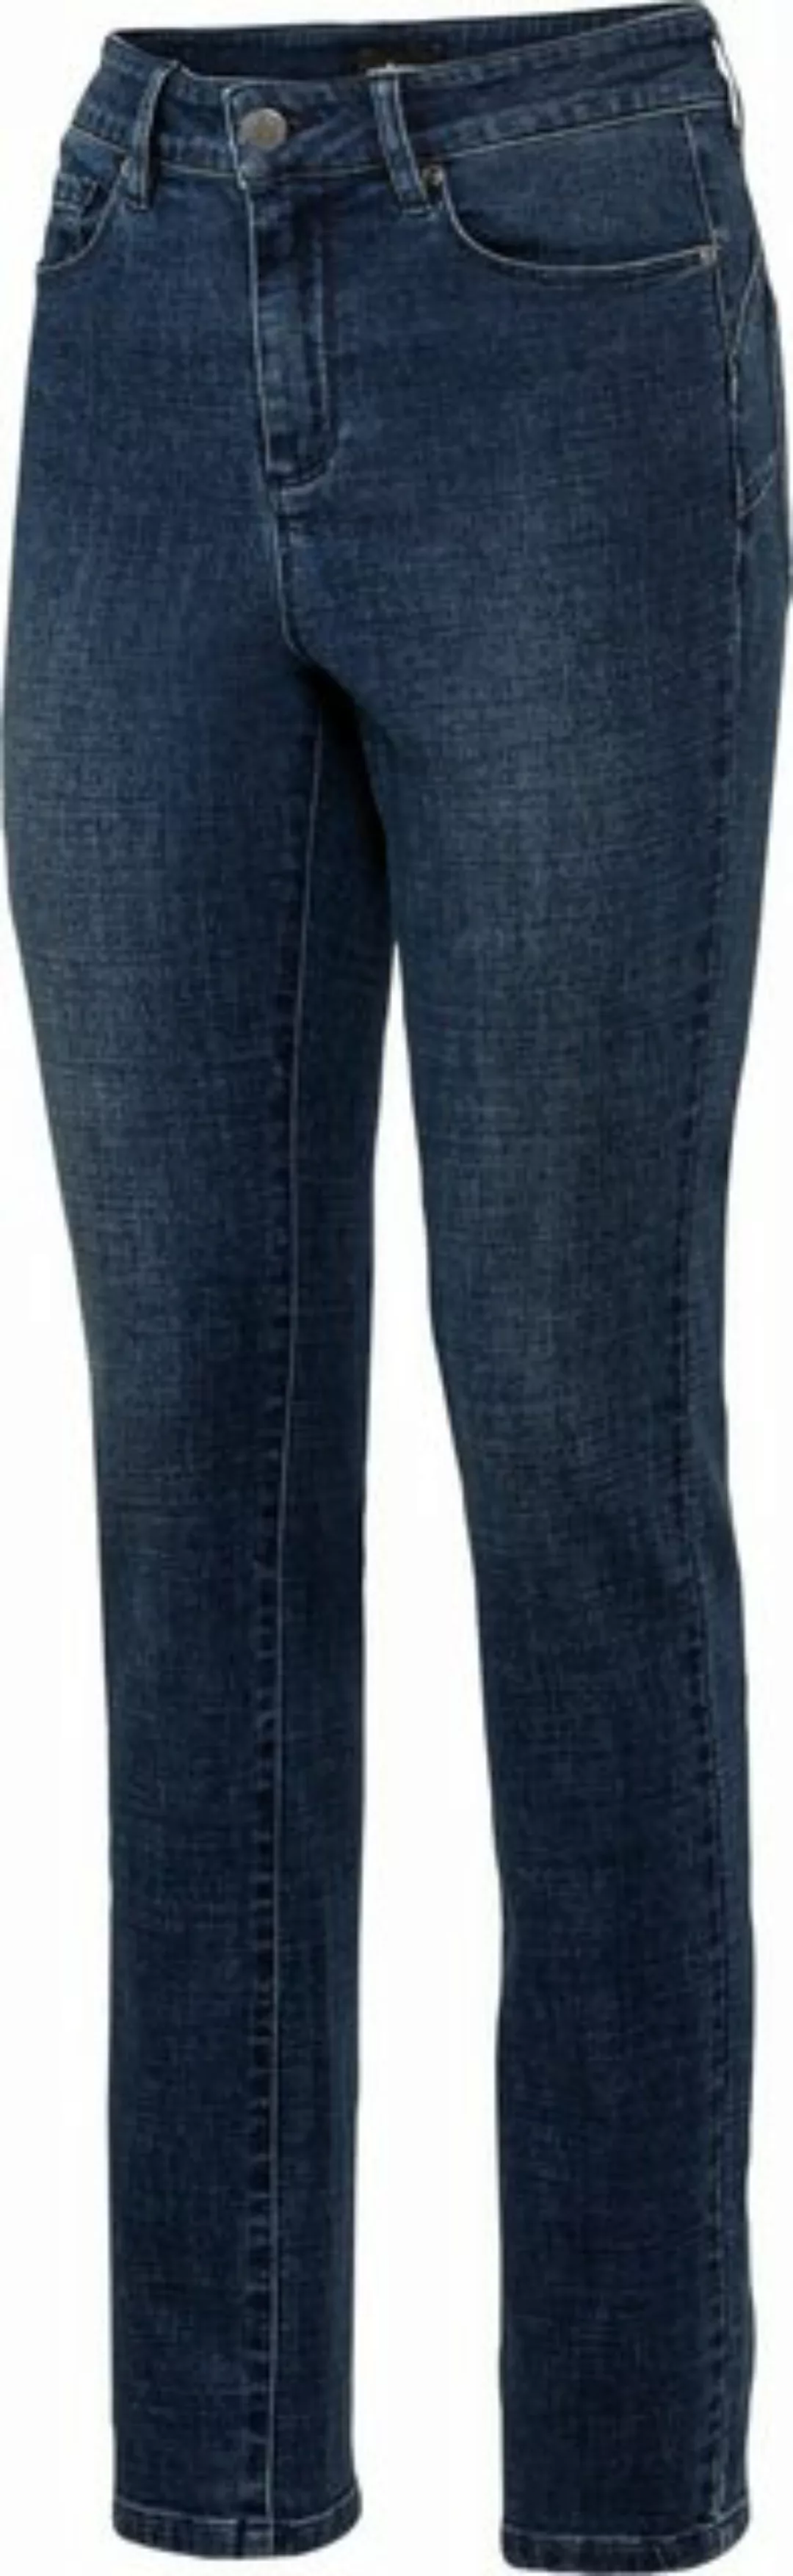 Zerberus Push-up-Jeans mit Stretch-Anteil, push-up Effekt, figur formend günstig online kaufen